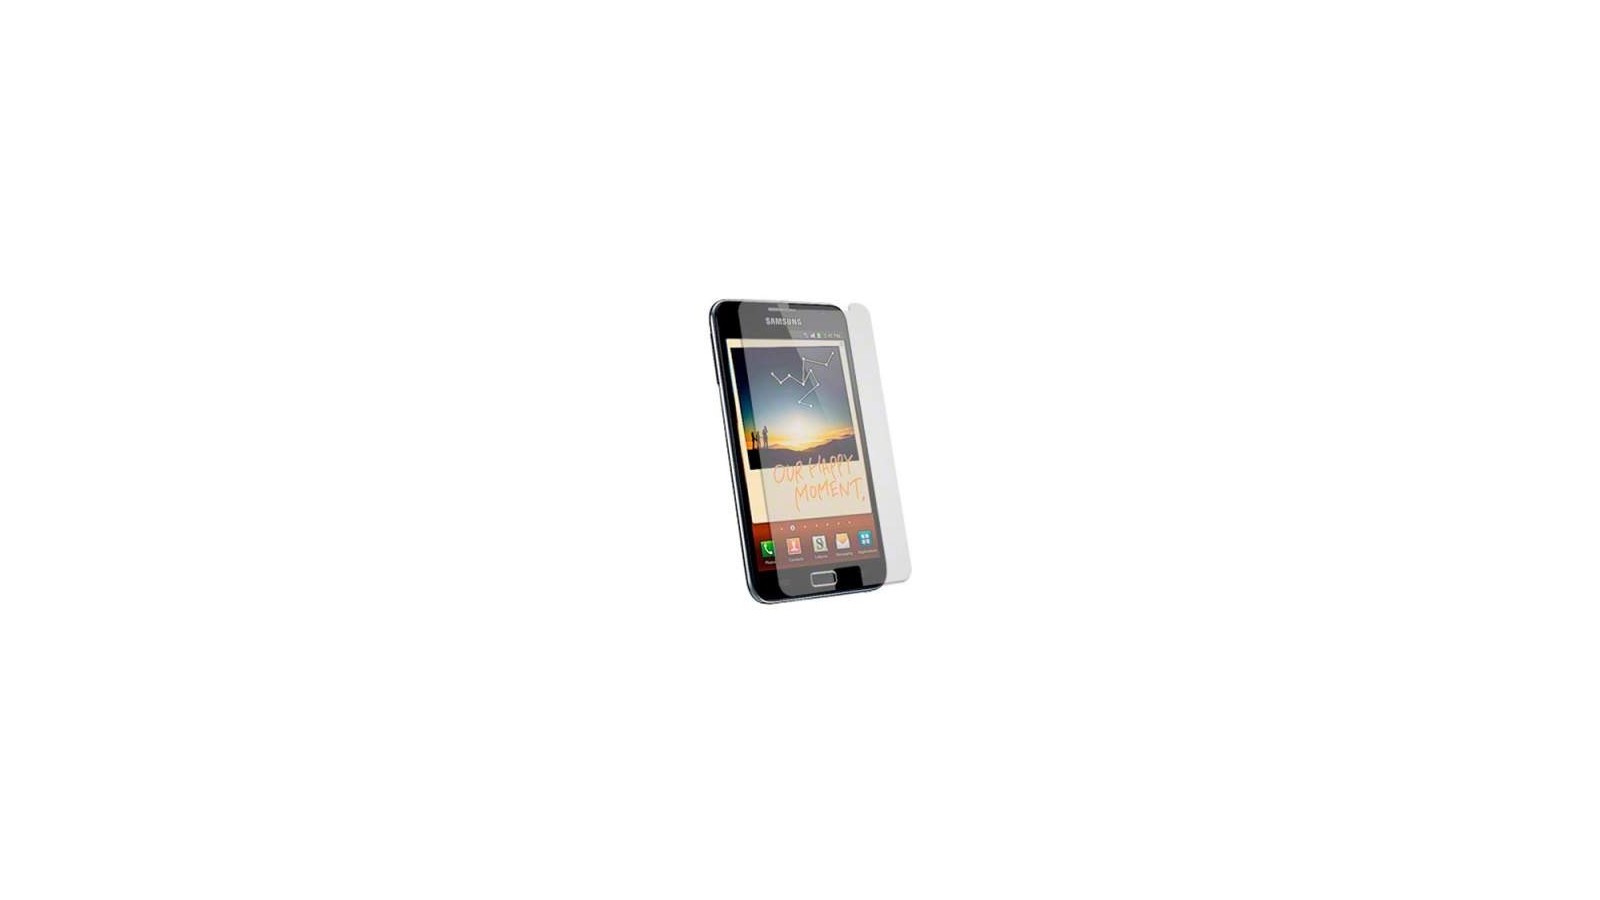 Pellicola protettiva + panno Samsung Galaxy Note i9220